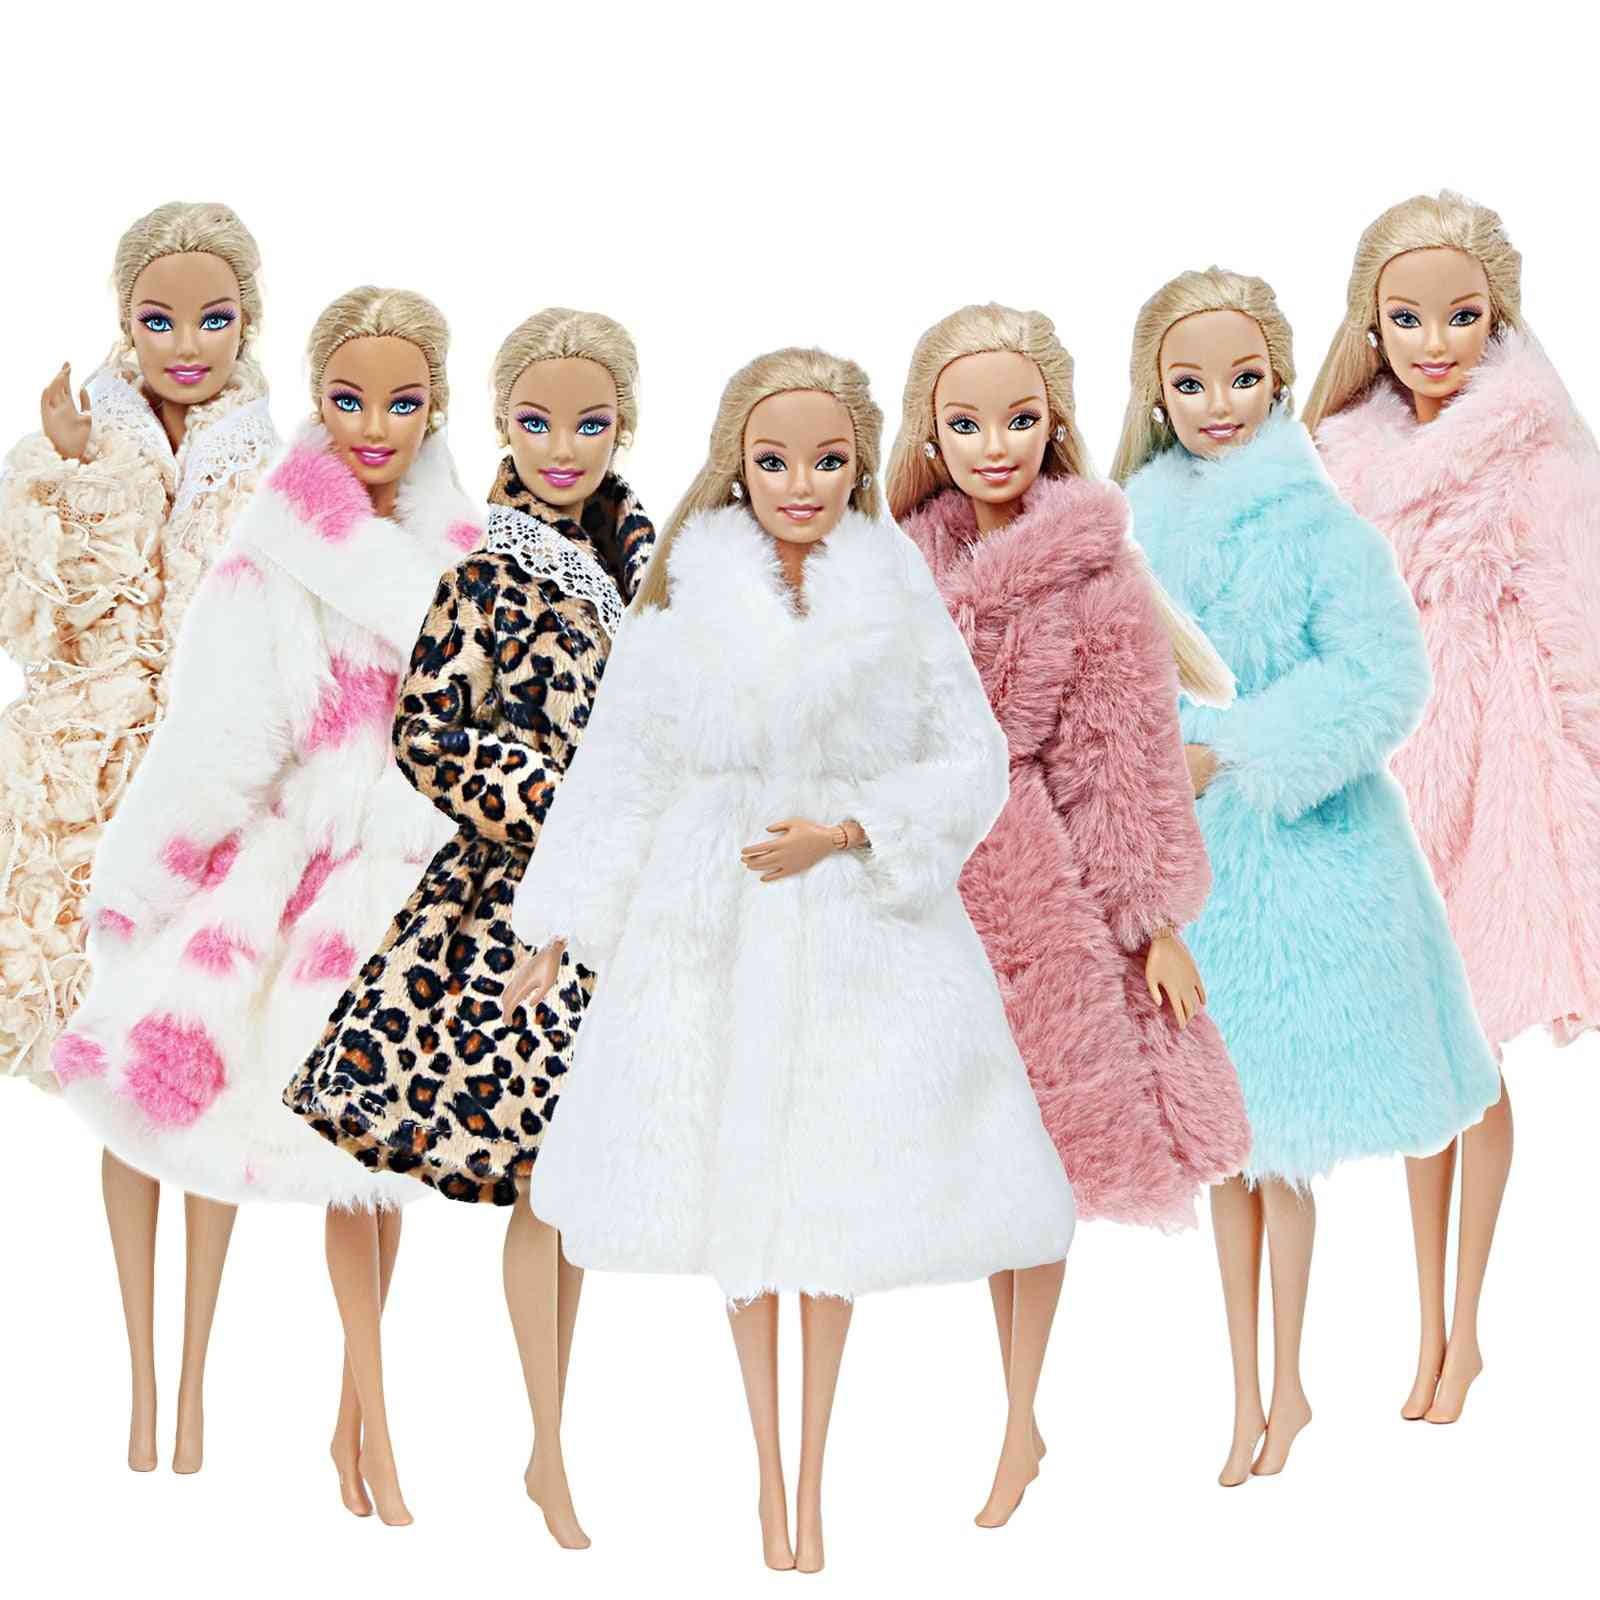 1 pezzo di abito da bambola fatto a mano di alta qualità, pelliccia per bambola barbie - accessori per bambole con abbigliamento invernale - n. Fg